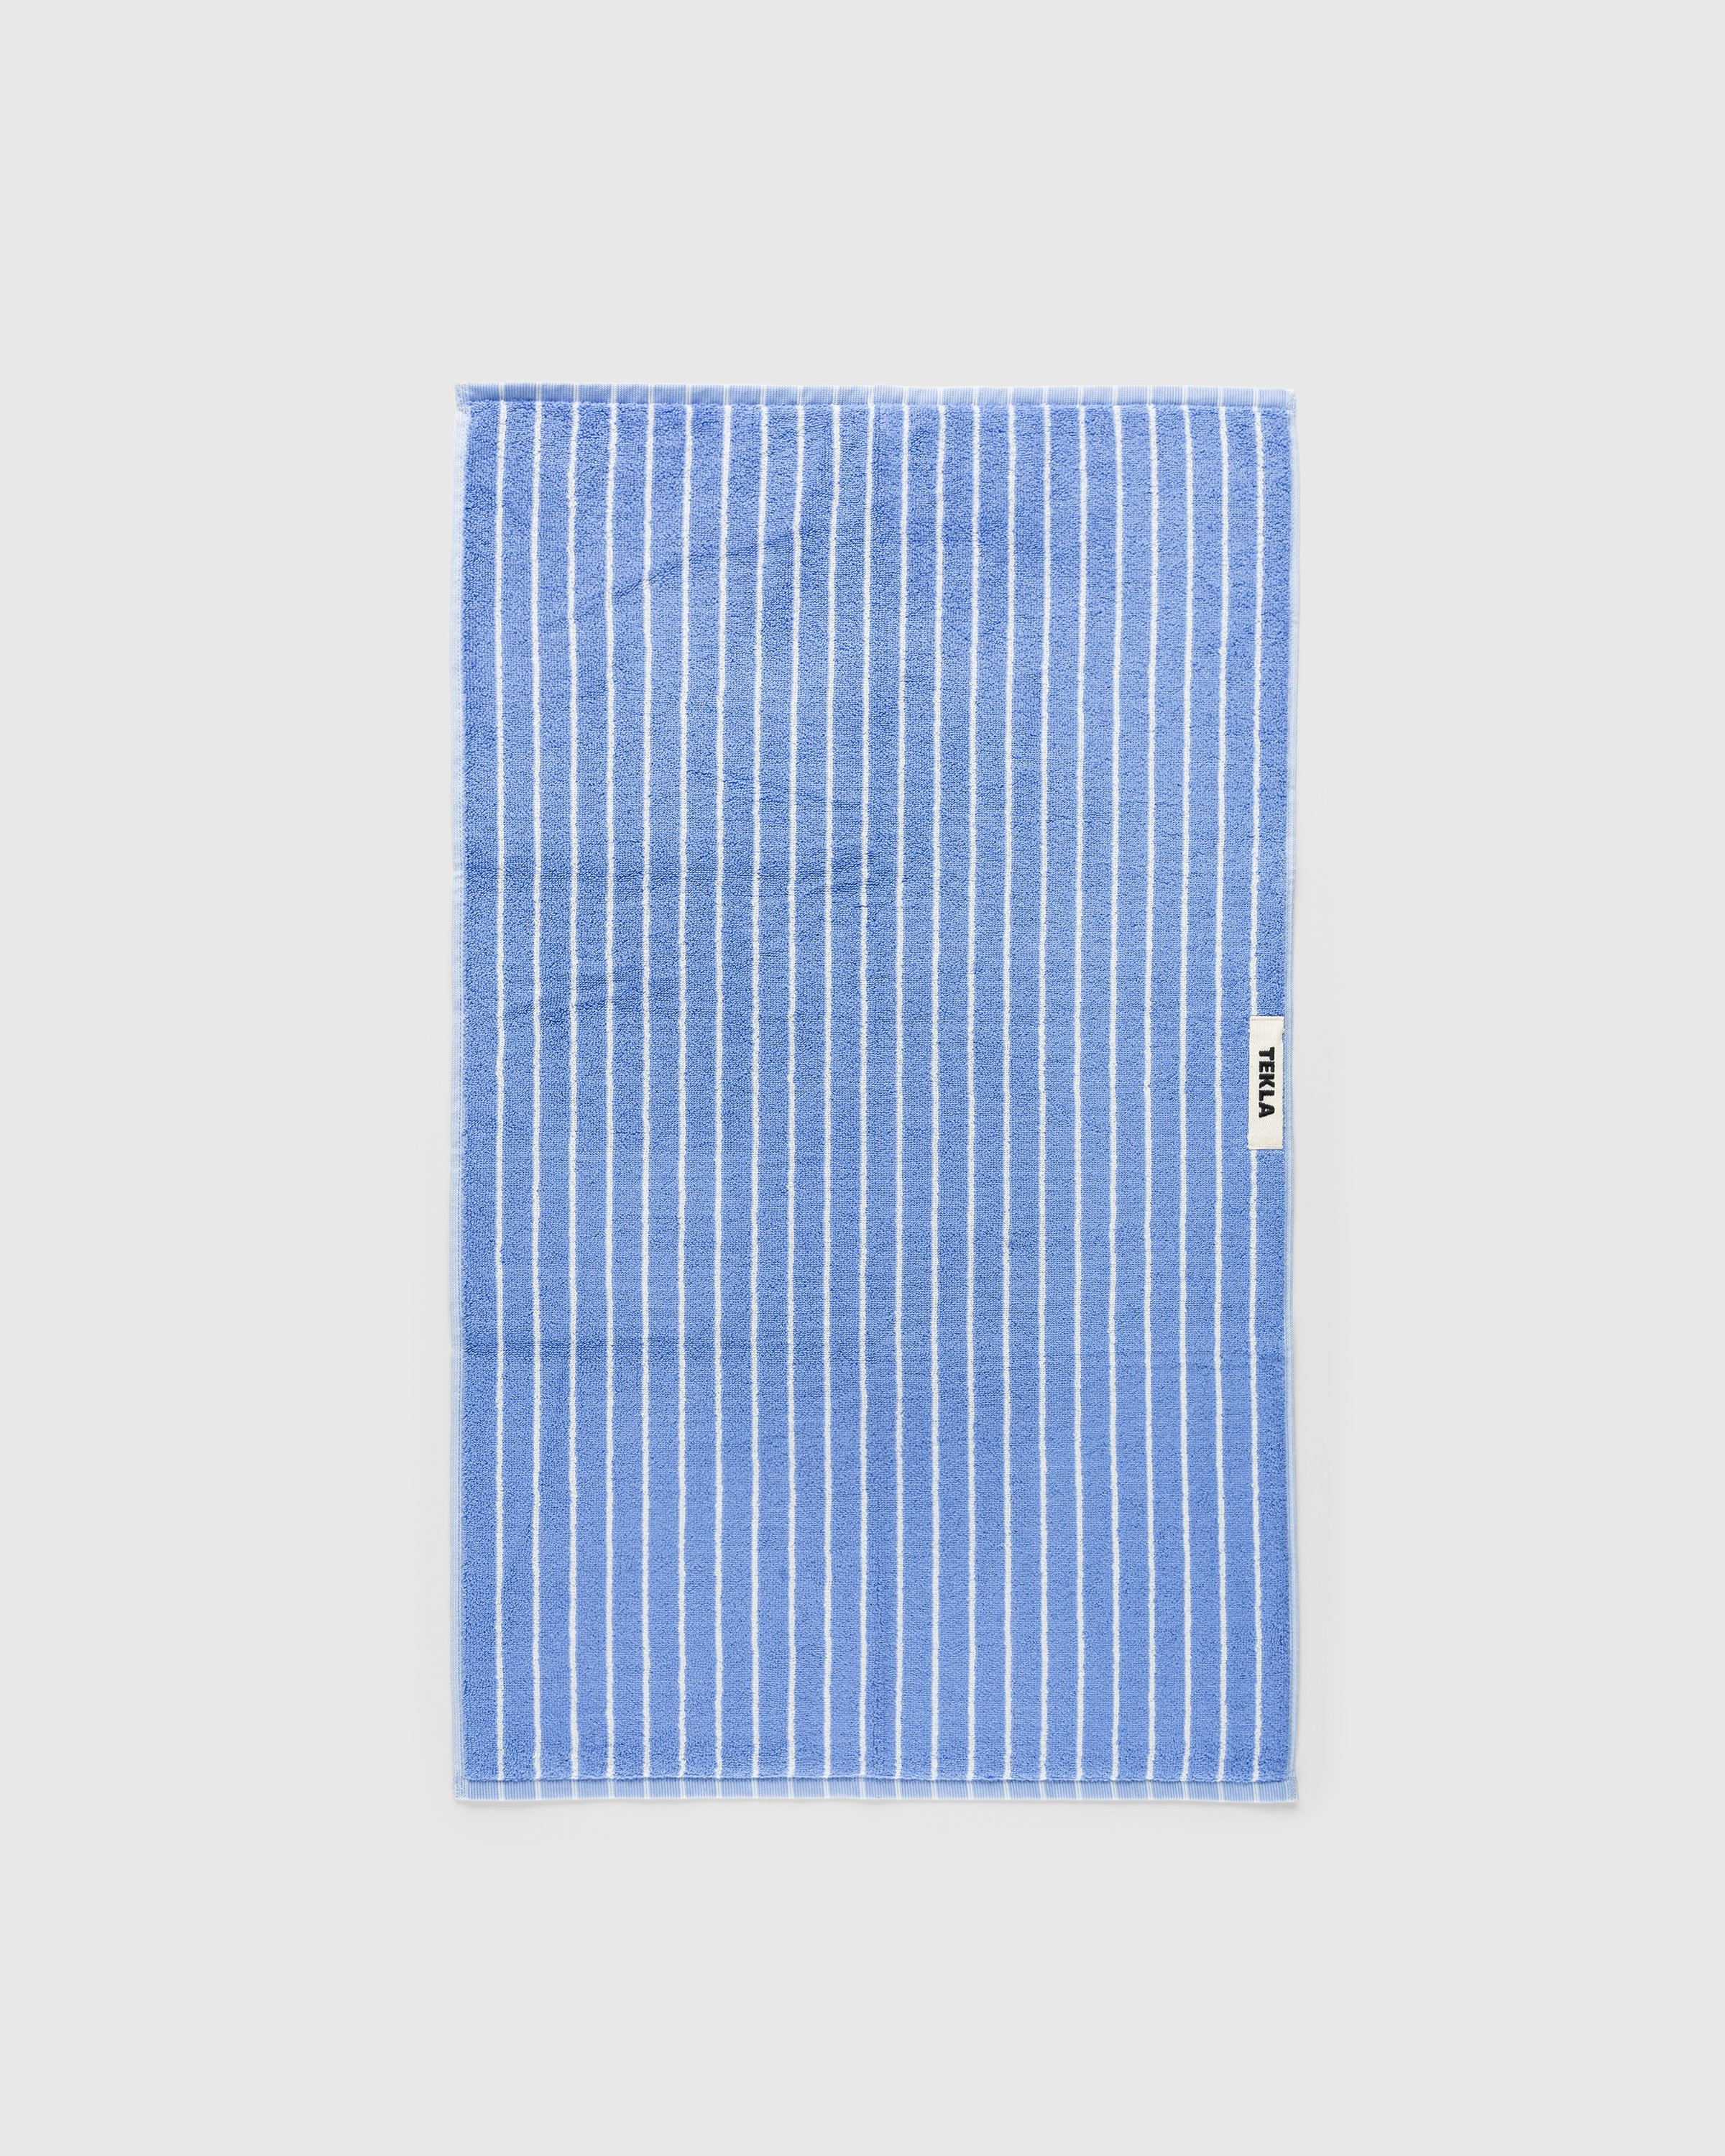 Tekla - Guest Towel 30x50 Clear Blue Stripes - Lifestyle - Blue - Image 2